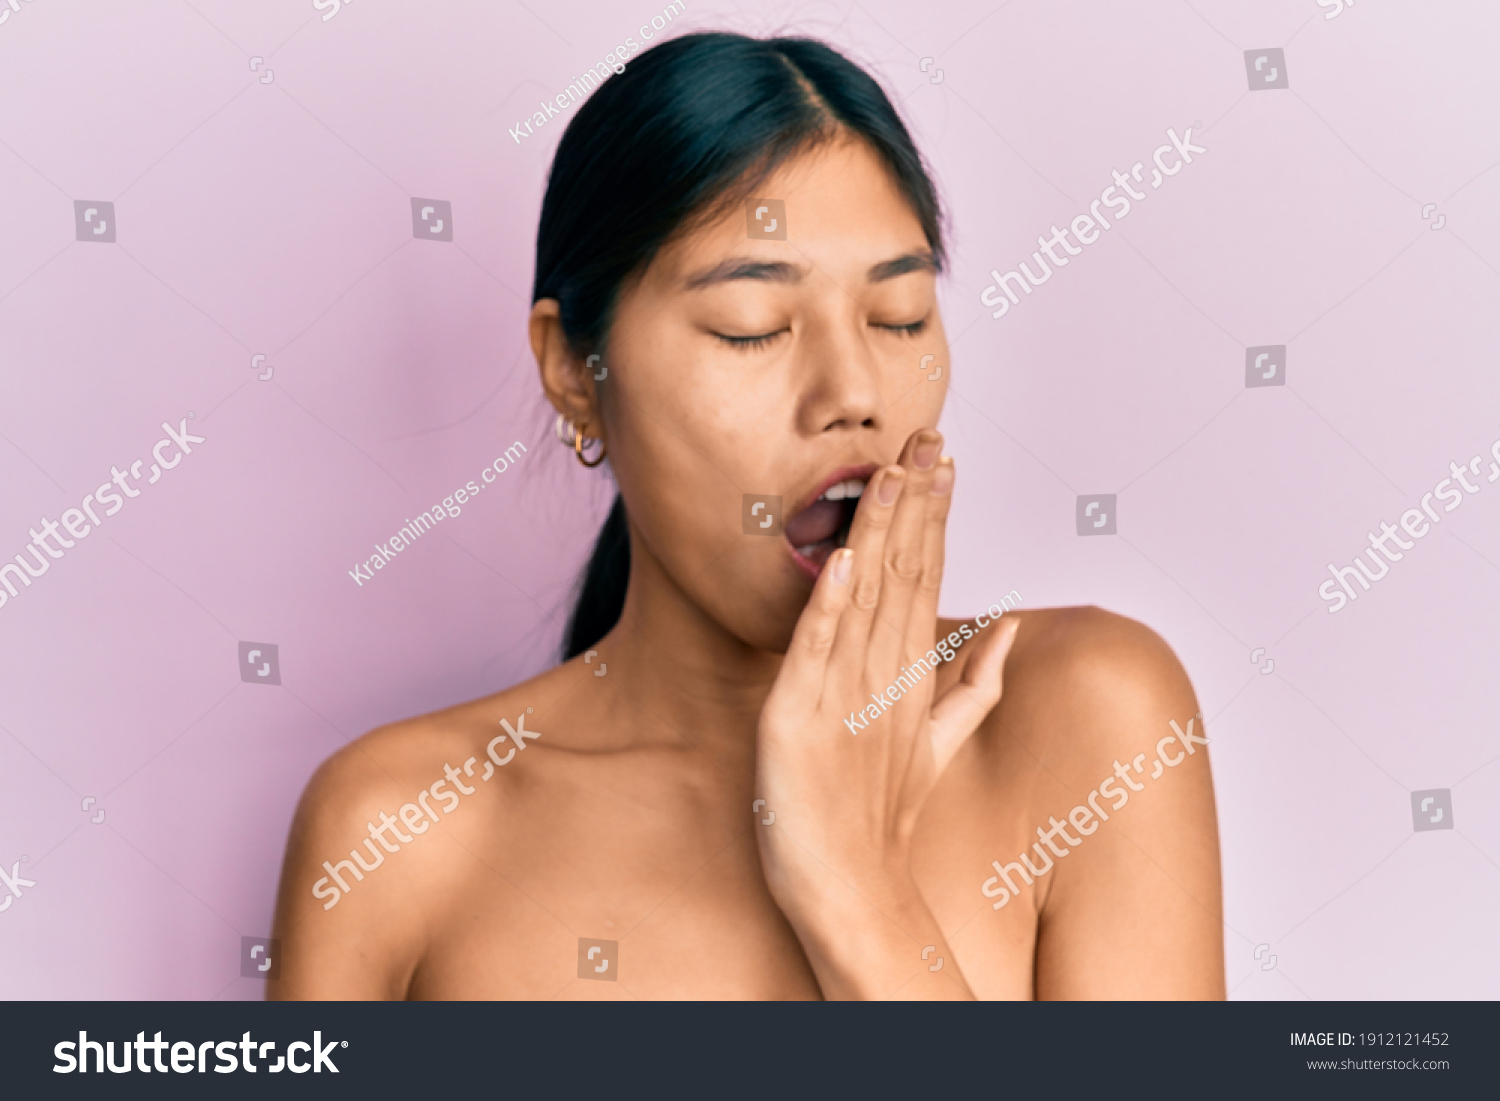 1 296件の「woman Waking Up Naked」の画像、写真素材、ベクター画像 Shutterstock